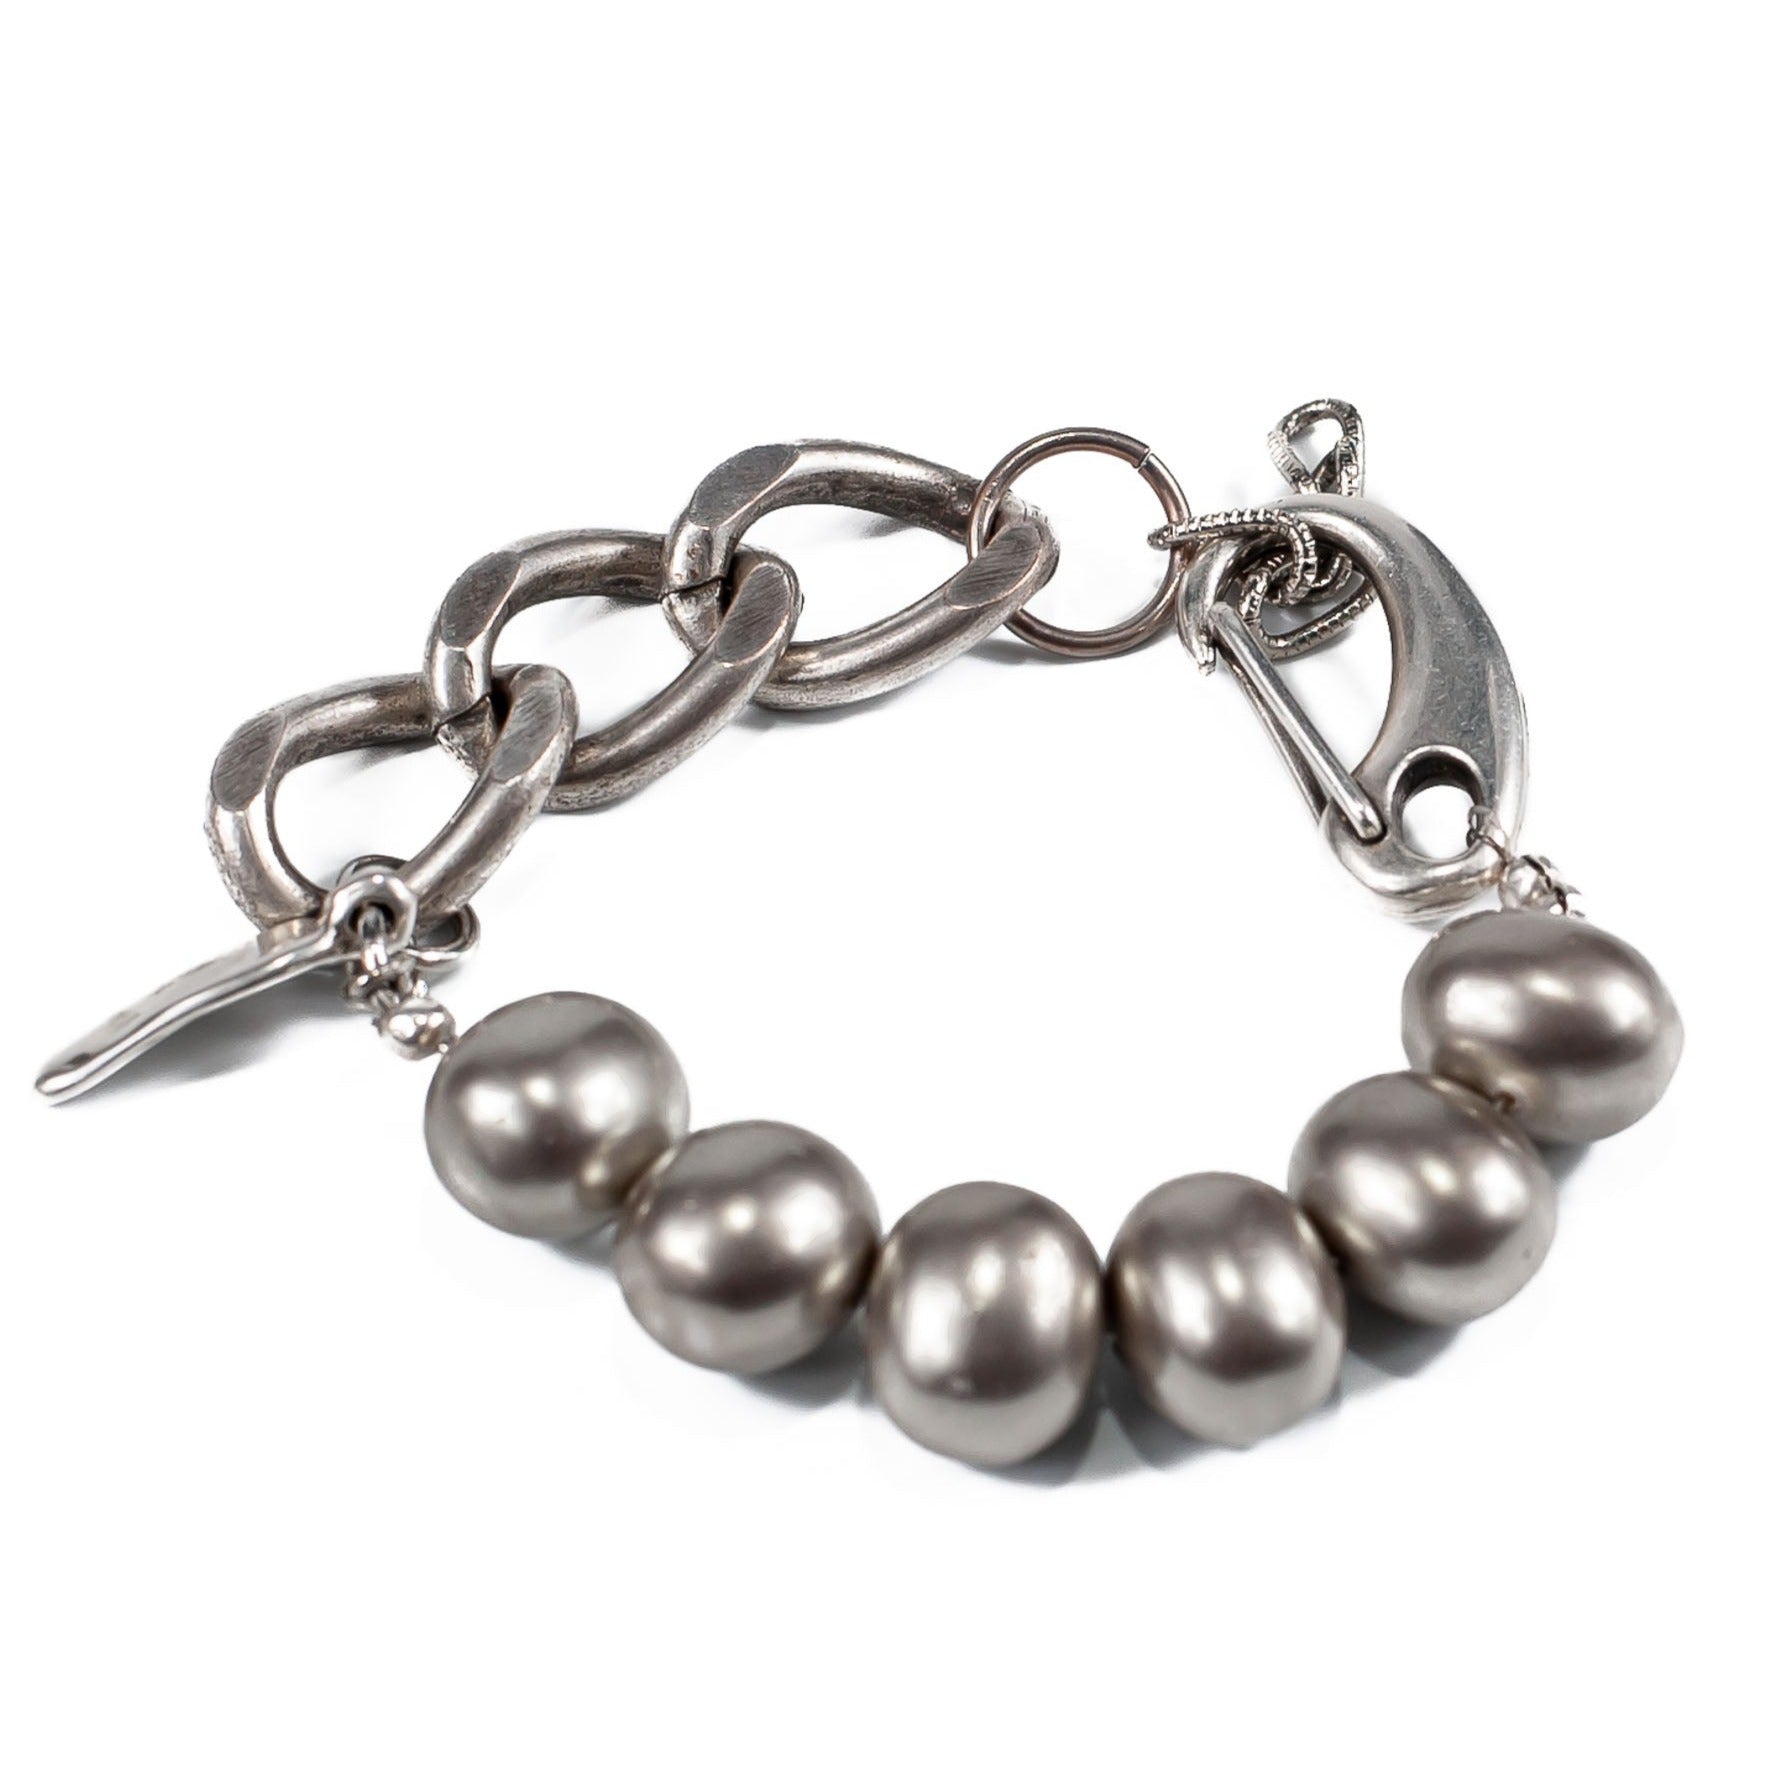 Shell Pearl bracelet in silver tones 